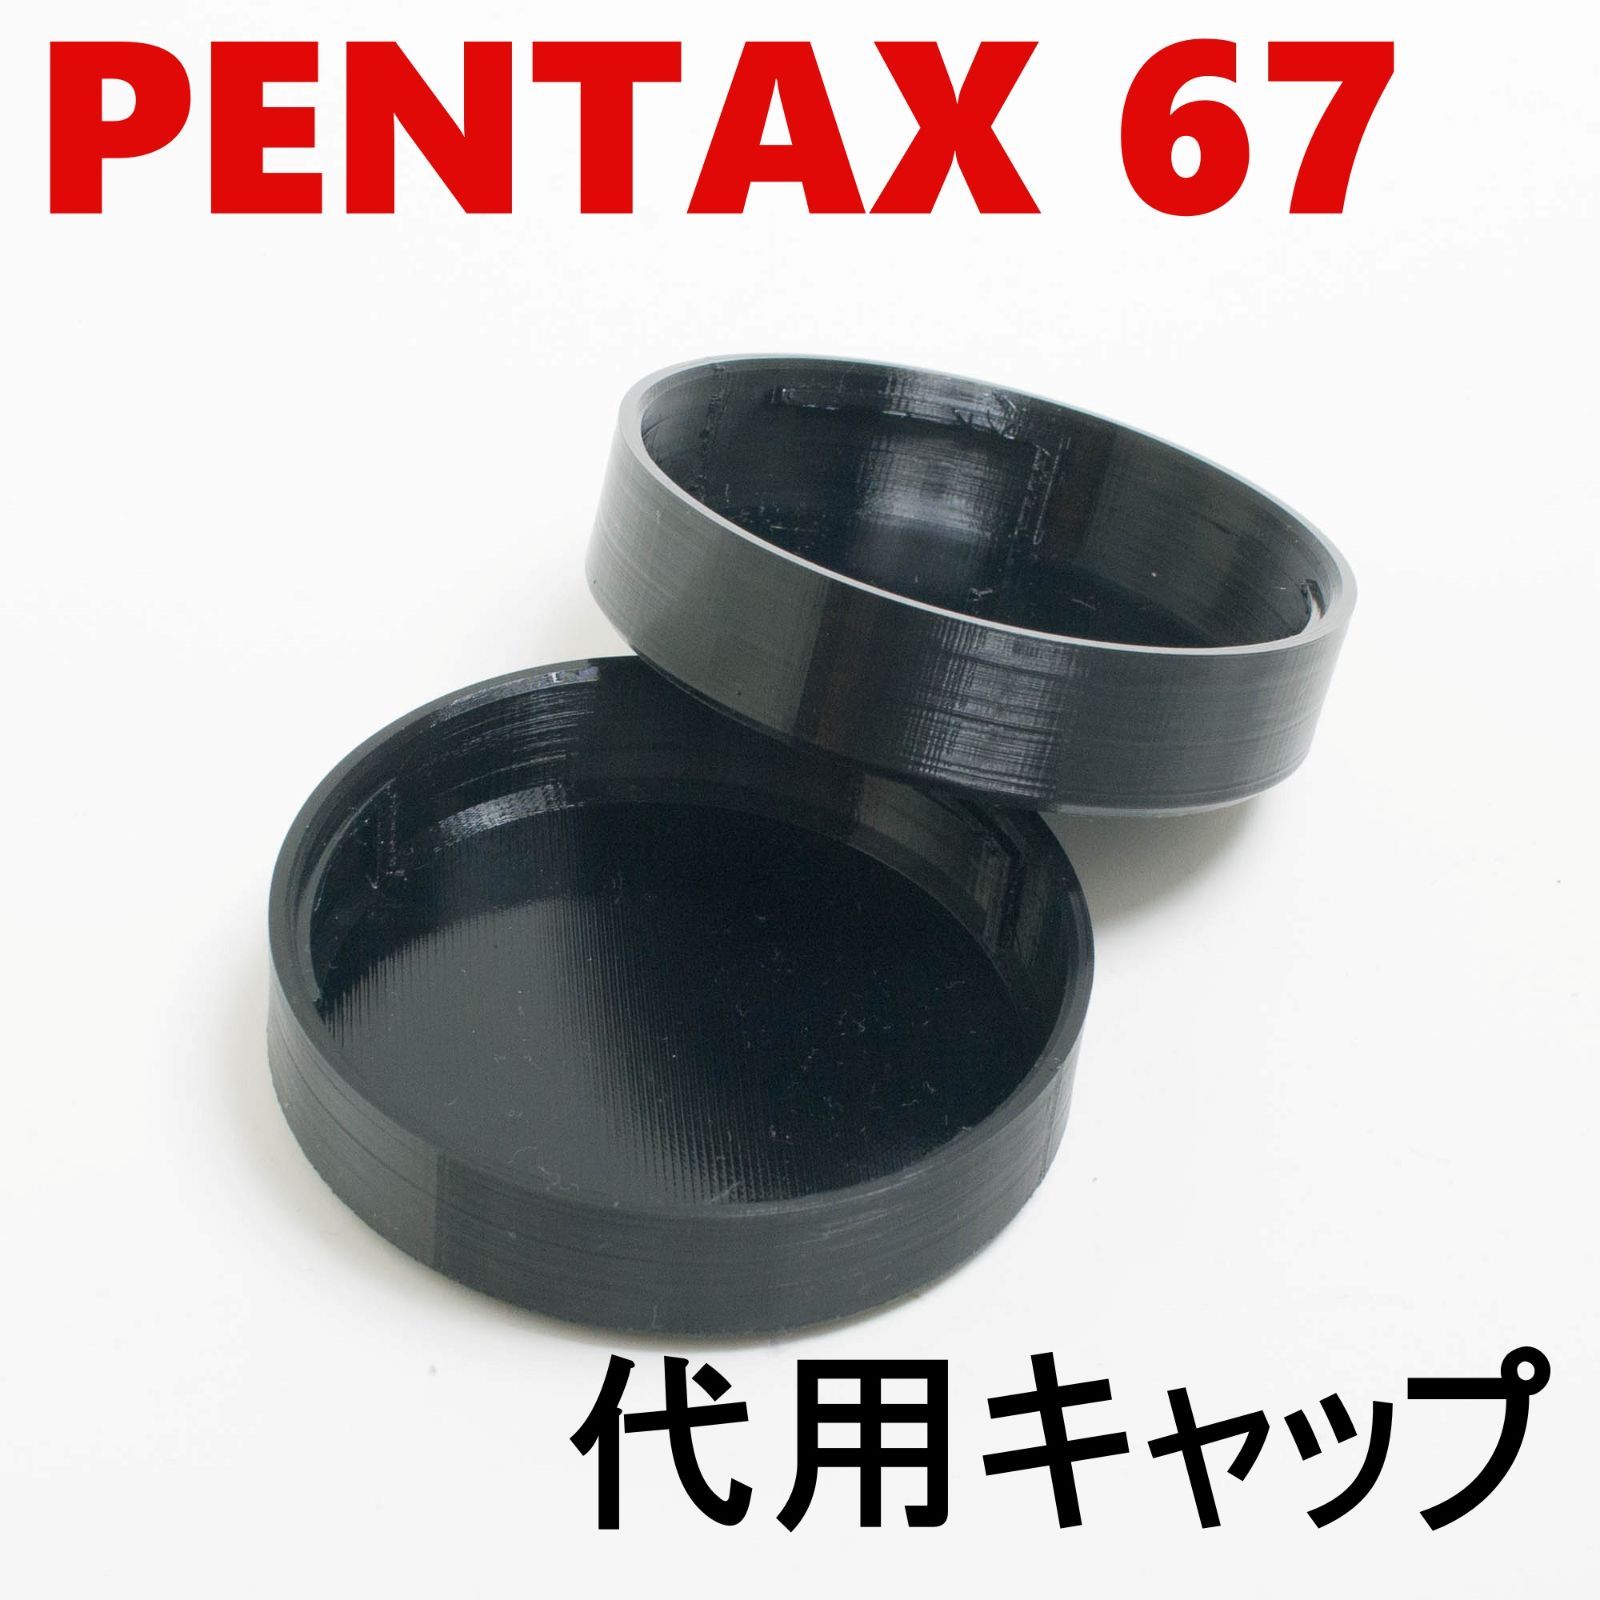 ペンタックス67 6x7 代用レンズリアキャップ 二個 セット